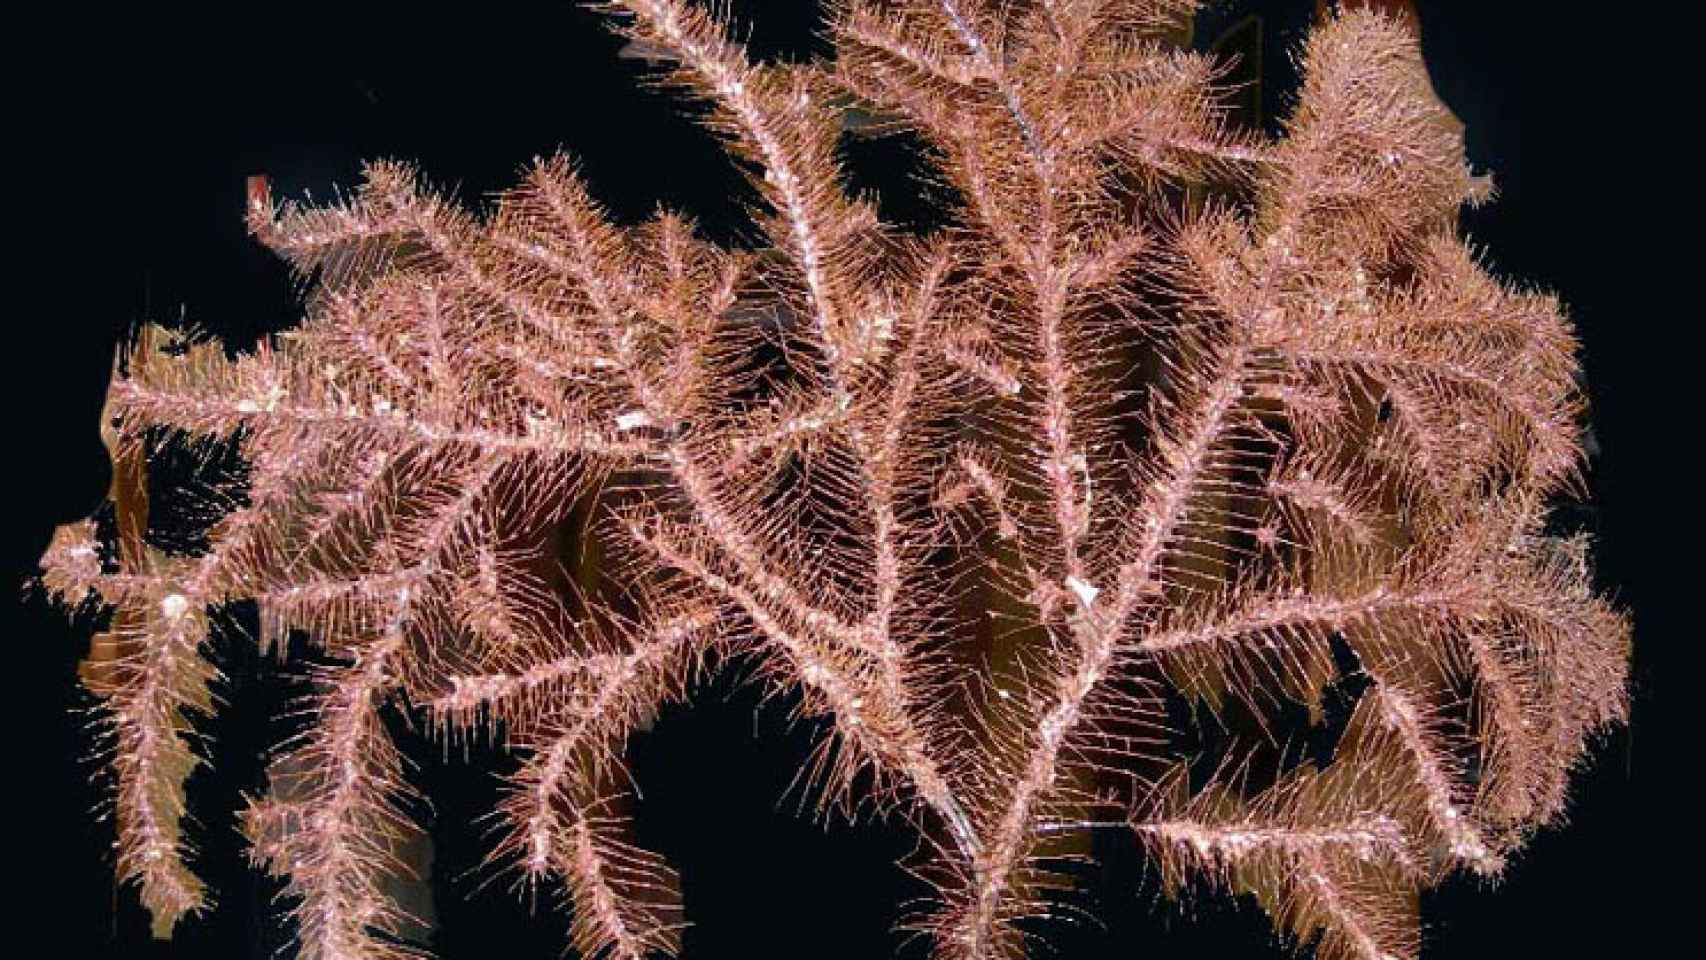 Esta especie de coral negro (Trissopathes sp) capturada en el Banco de Galicia pertenece a un género desconocido en aguas europeas, y es nueva para la Ciencia